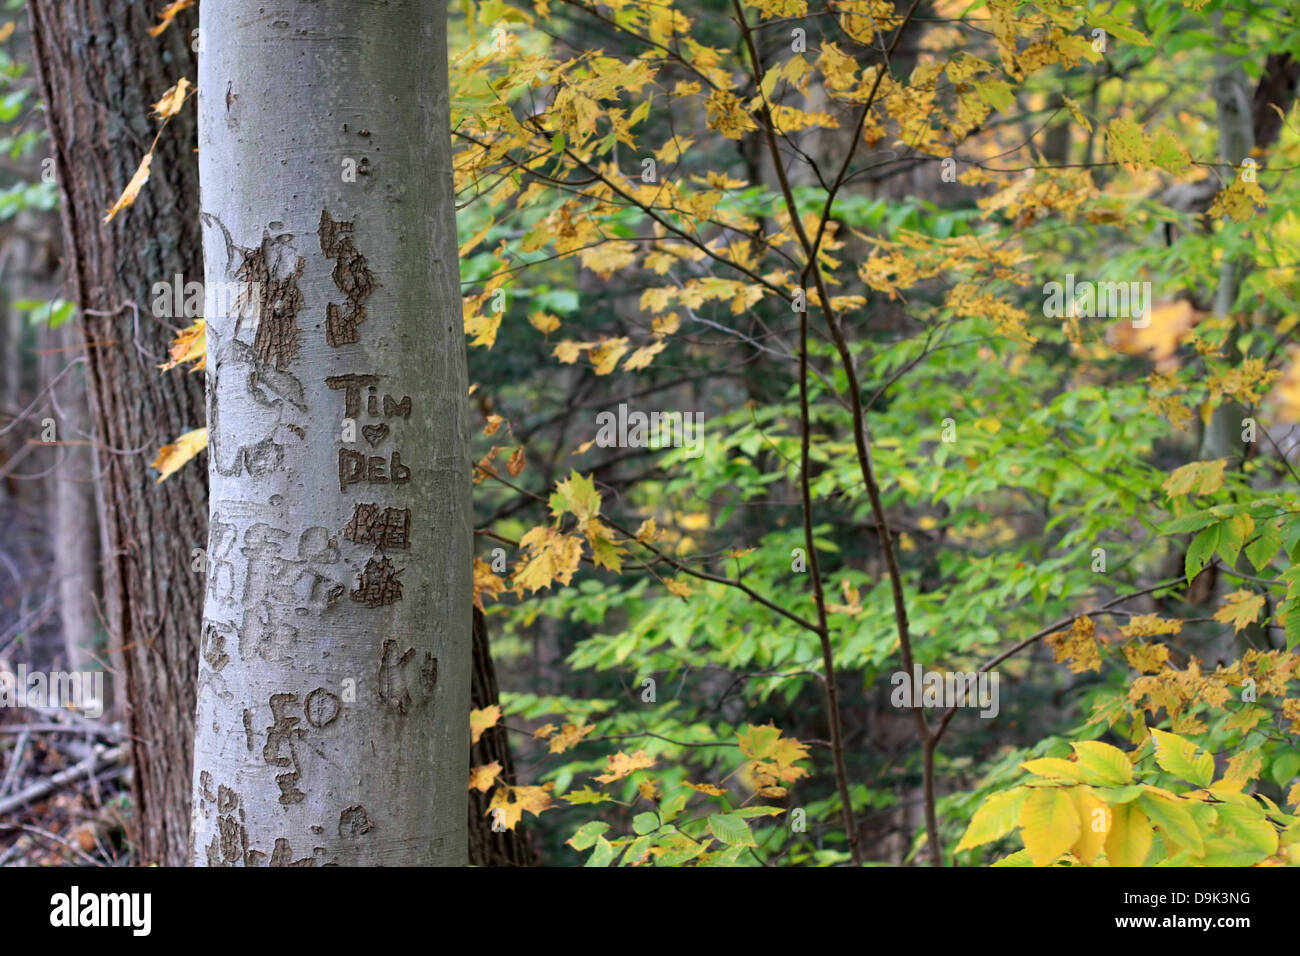 Herbst Herbst Blatt Blätter Stamm Rinde Baumnamen schnitzen Herzensliebe Tim Deb Liebhaber Sweethearts Ast Äste horizontal Stockfoto